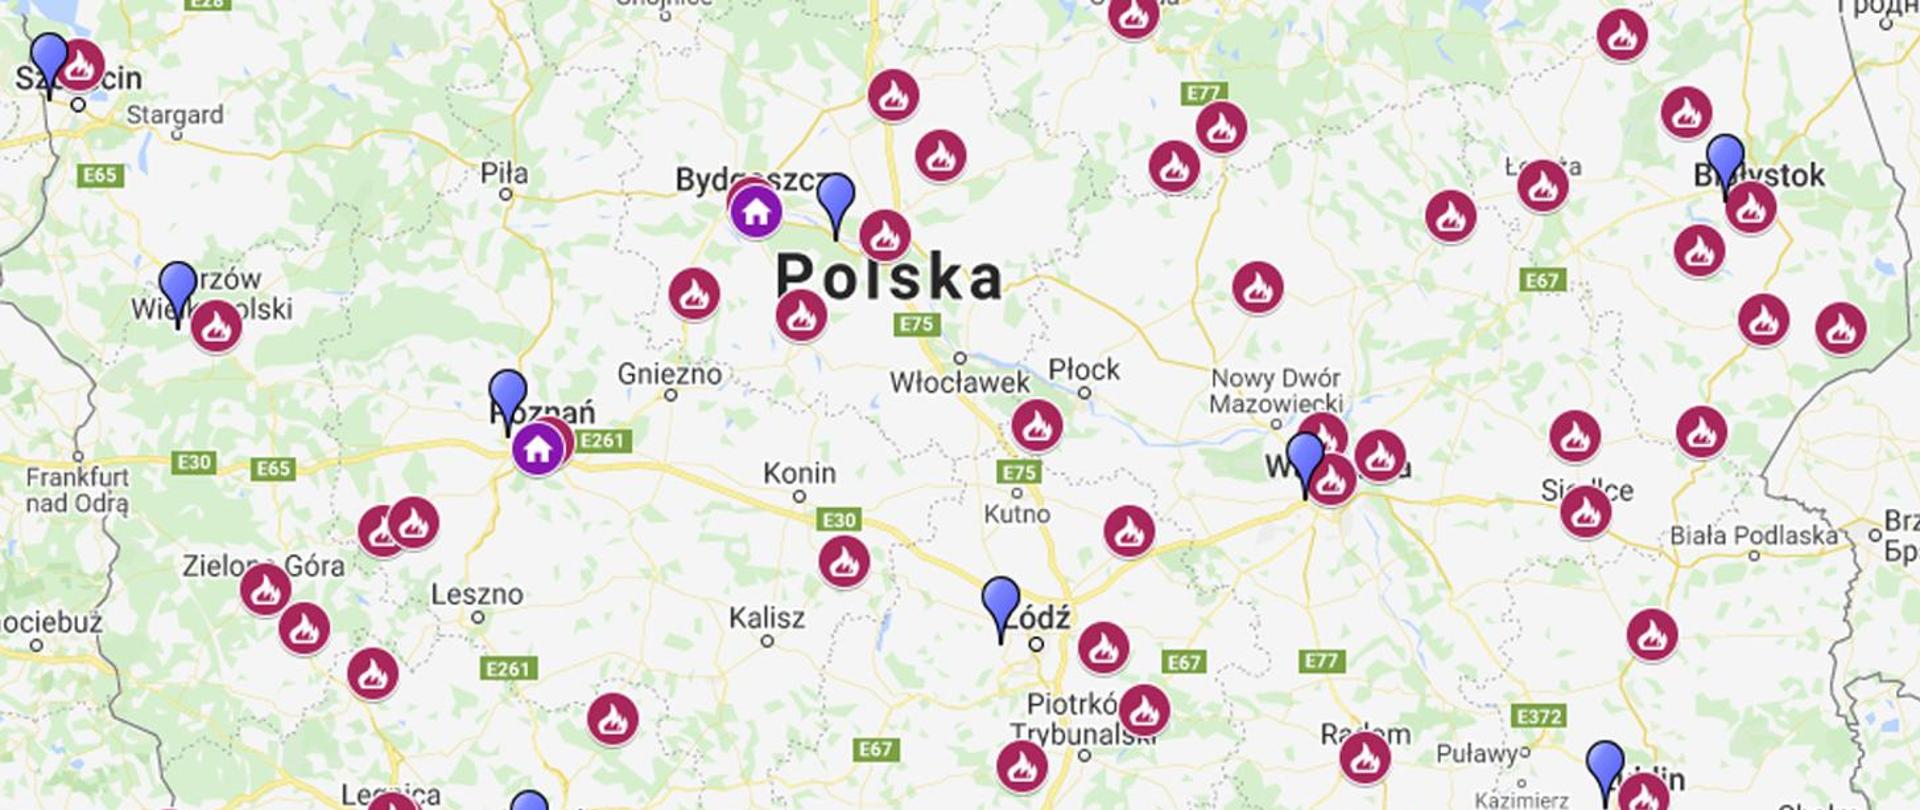 Zdjęcie ukazuje mapę Polski gdzie najdalej oddalone od siebie punkty to od lewego górnego rogu Szczecin do prawego którym jest Lublin na mapie tej oznaczone są sale edukacyjne "ognik" jako różowe kółko z białym płomieniem wewnątrz. Punktów tych jest 41.